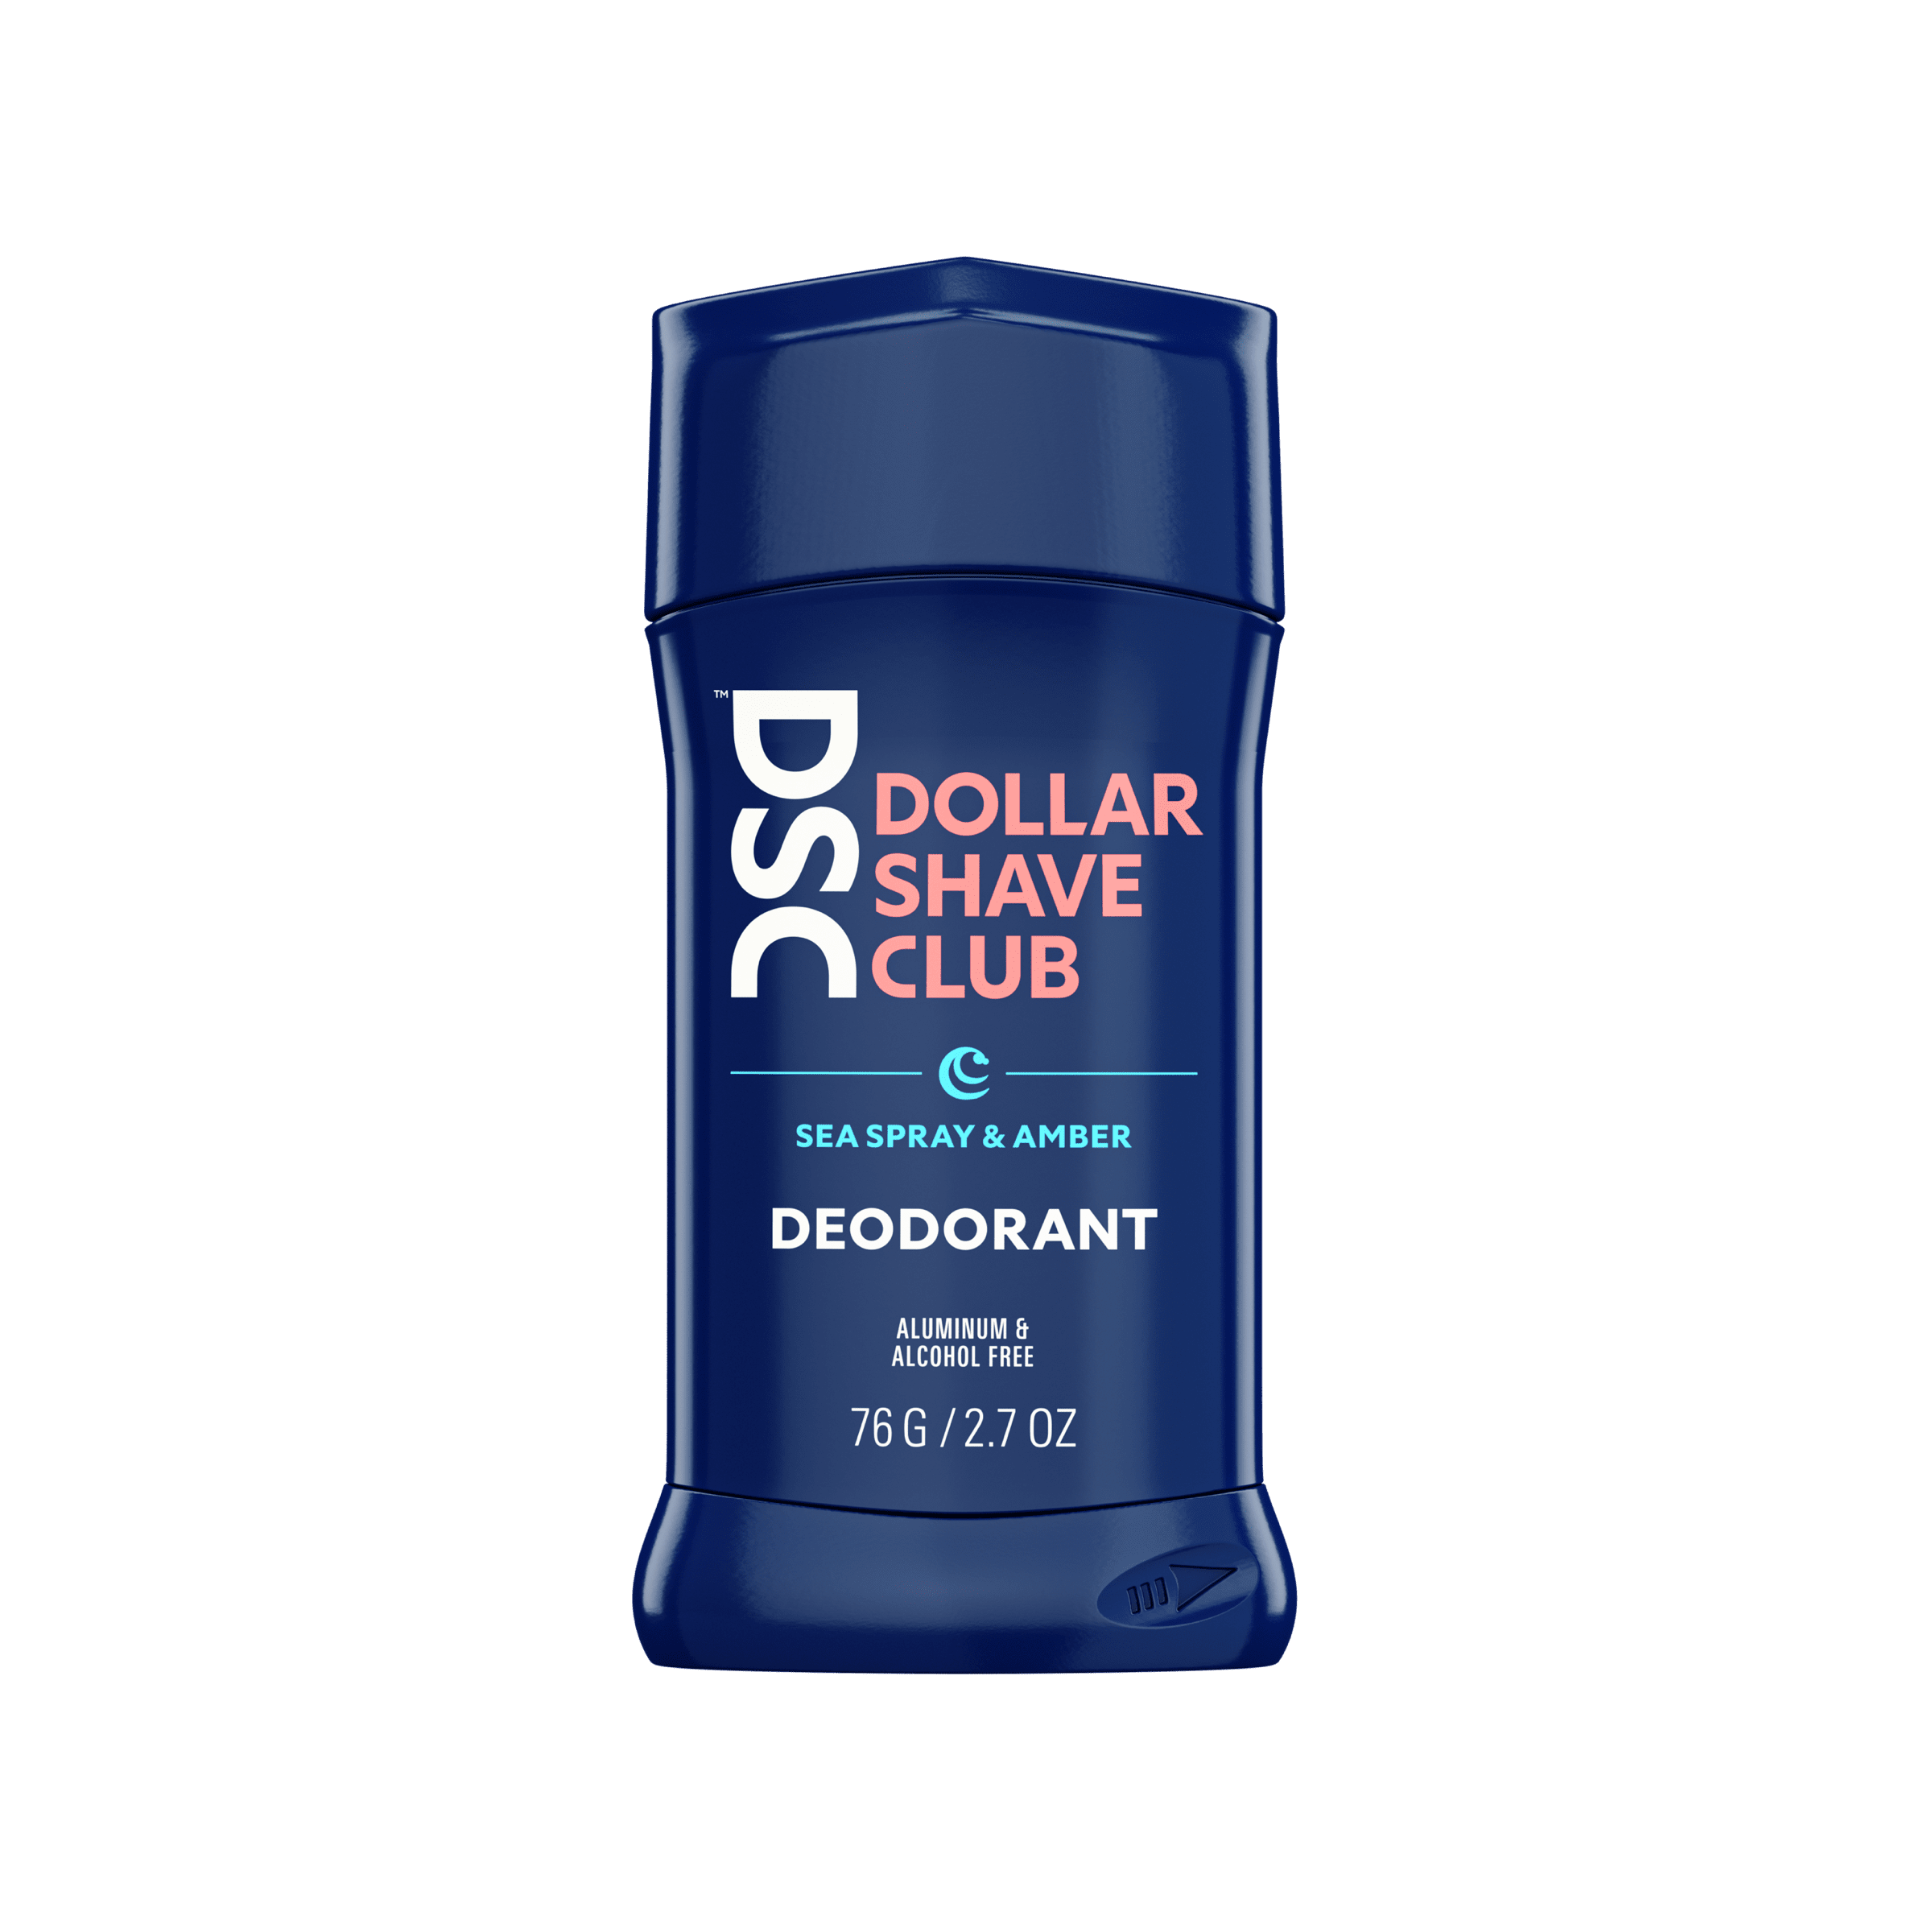 Dollar Shave Club Deodorant Sea Spray Amber against blank backdrop.